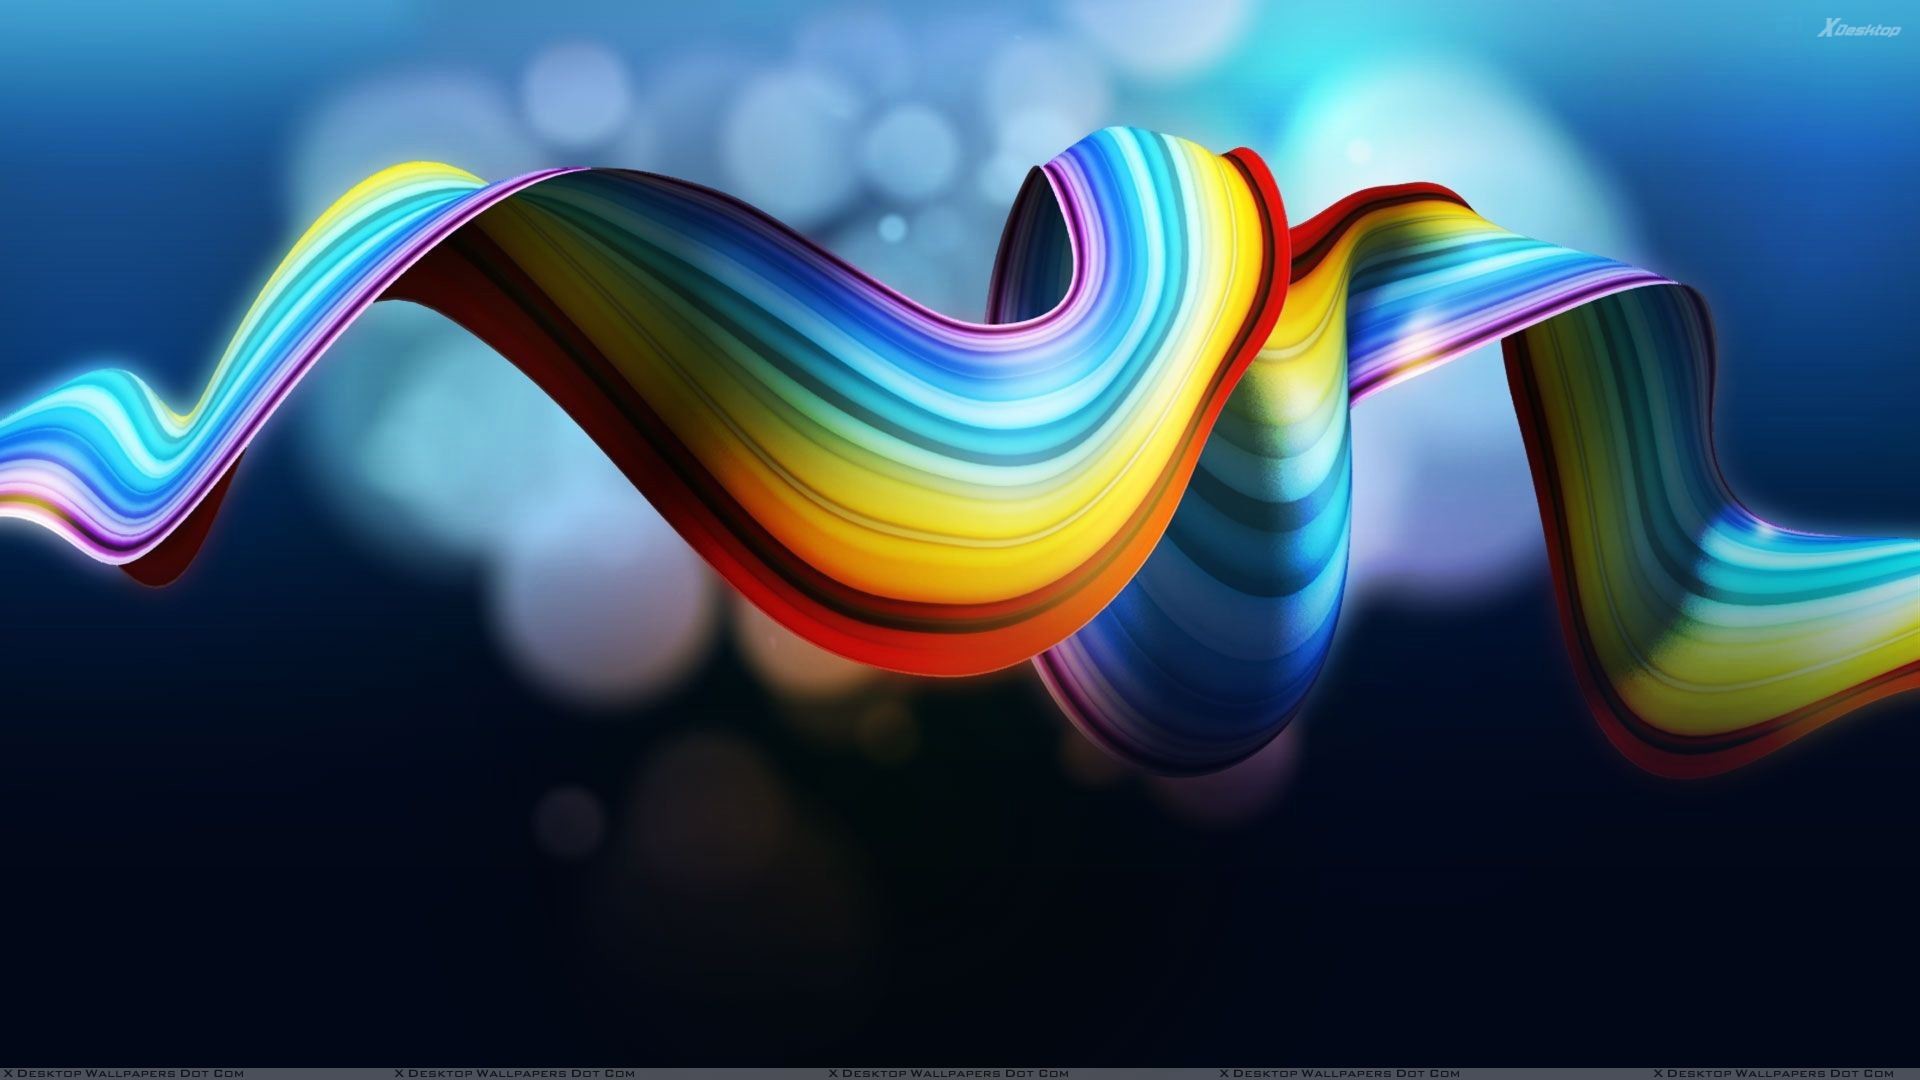 Download Rainbow Zebra Background Designs ·① WallpaperTag